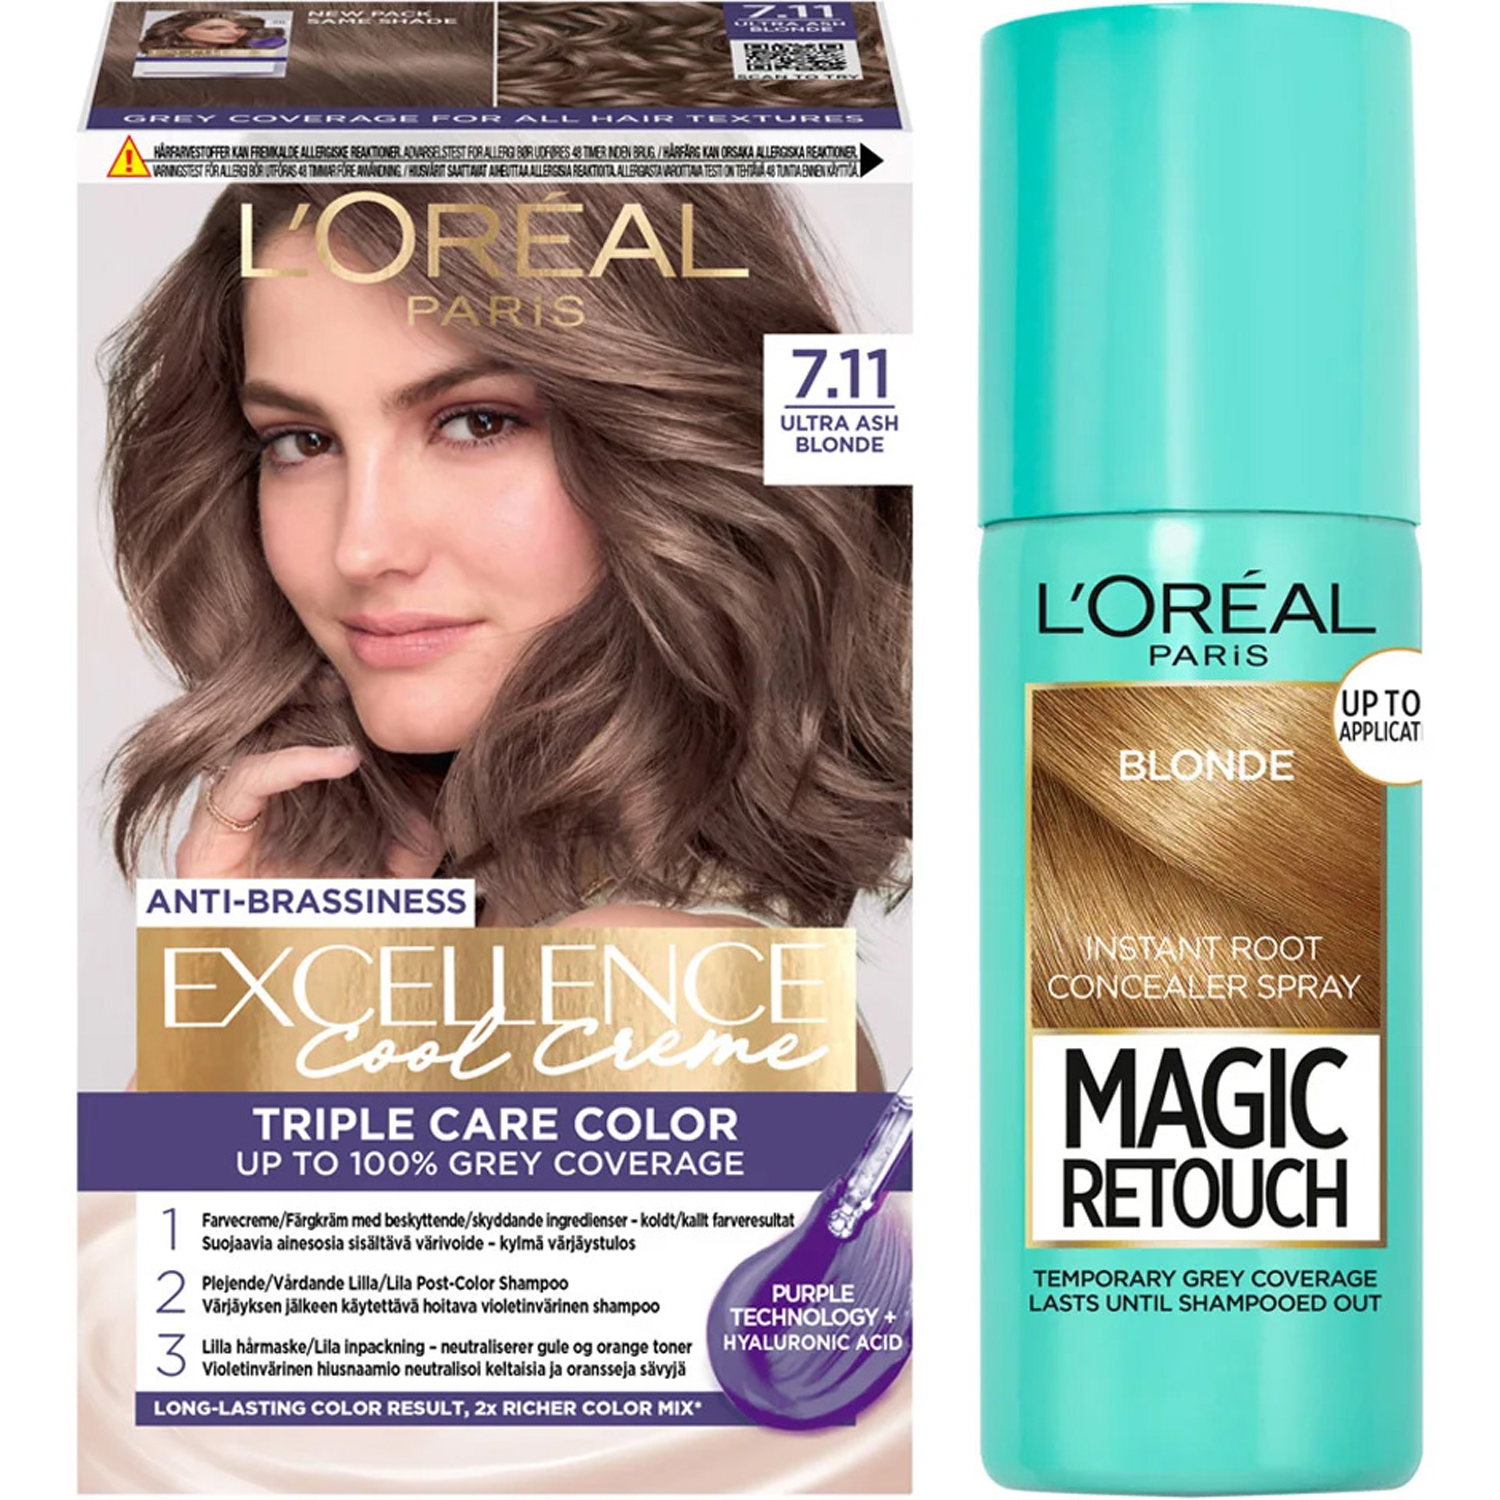 Bilde av L'oréal Paris Excellence Excellence 7.11 Ultra Ash Blond + Magic Retouch Roots 5 Blonde